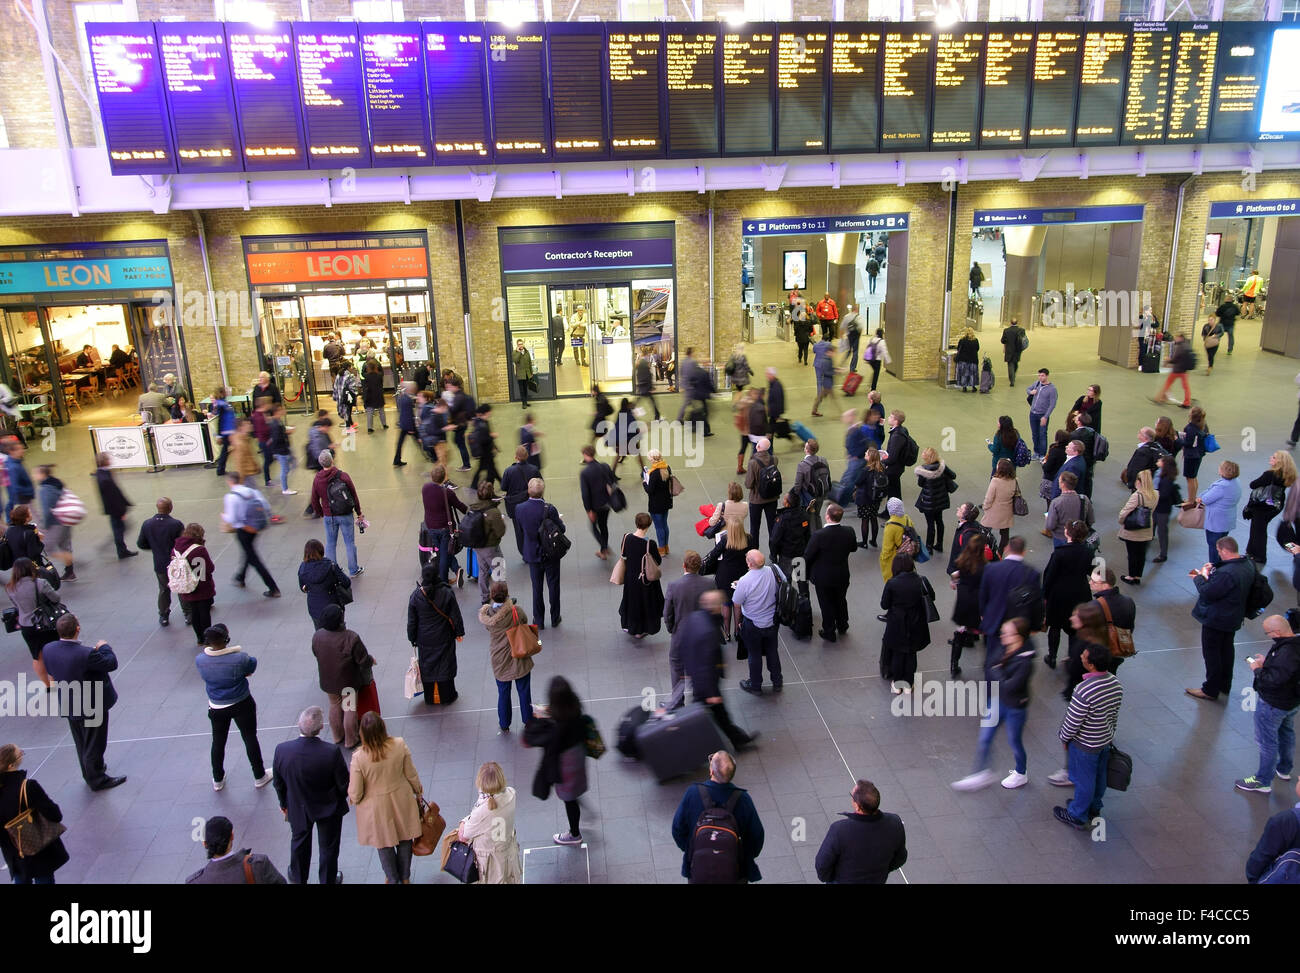 Passagiere sehen Anzeigentafel in Kings Cross Bahnhof, London Stockfoto